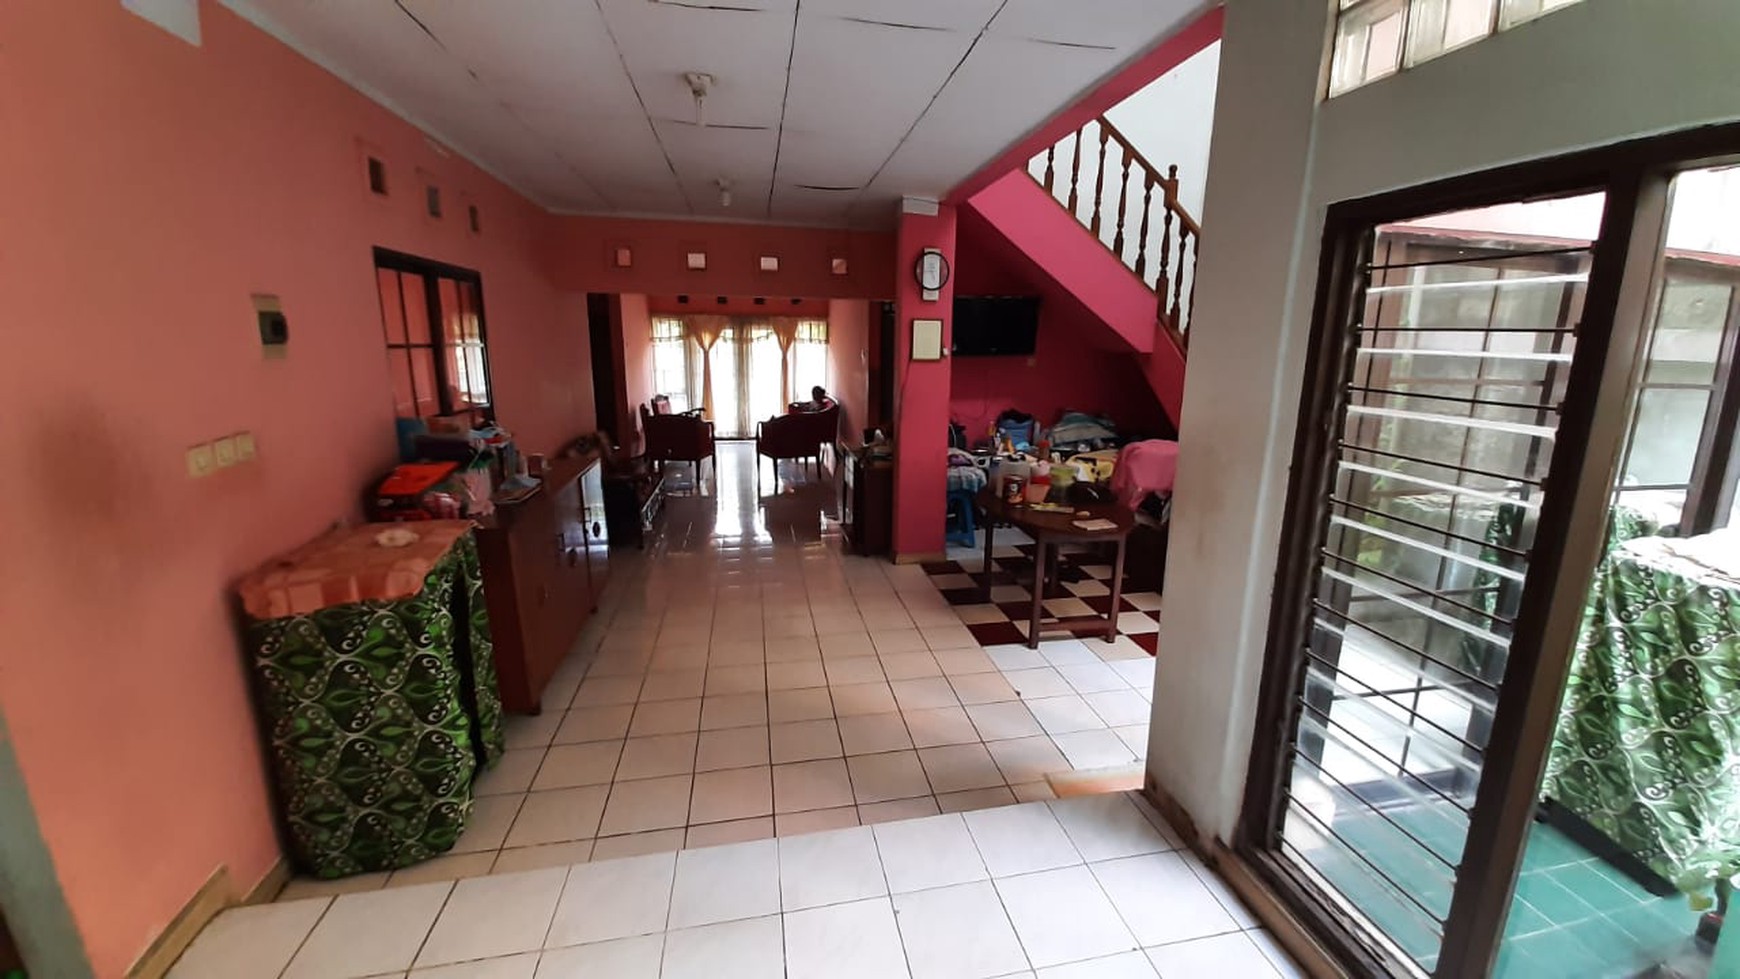 Rumah 2 lantai siap huni, lokasi strategis di Bintaro..